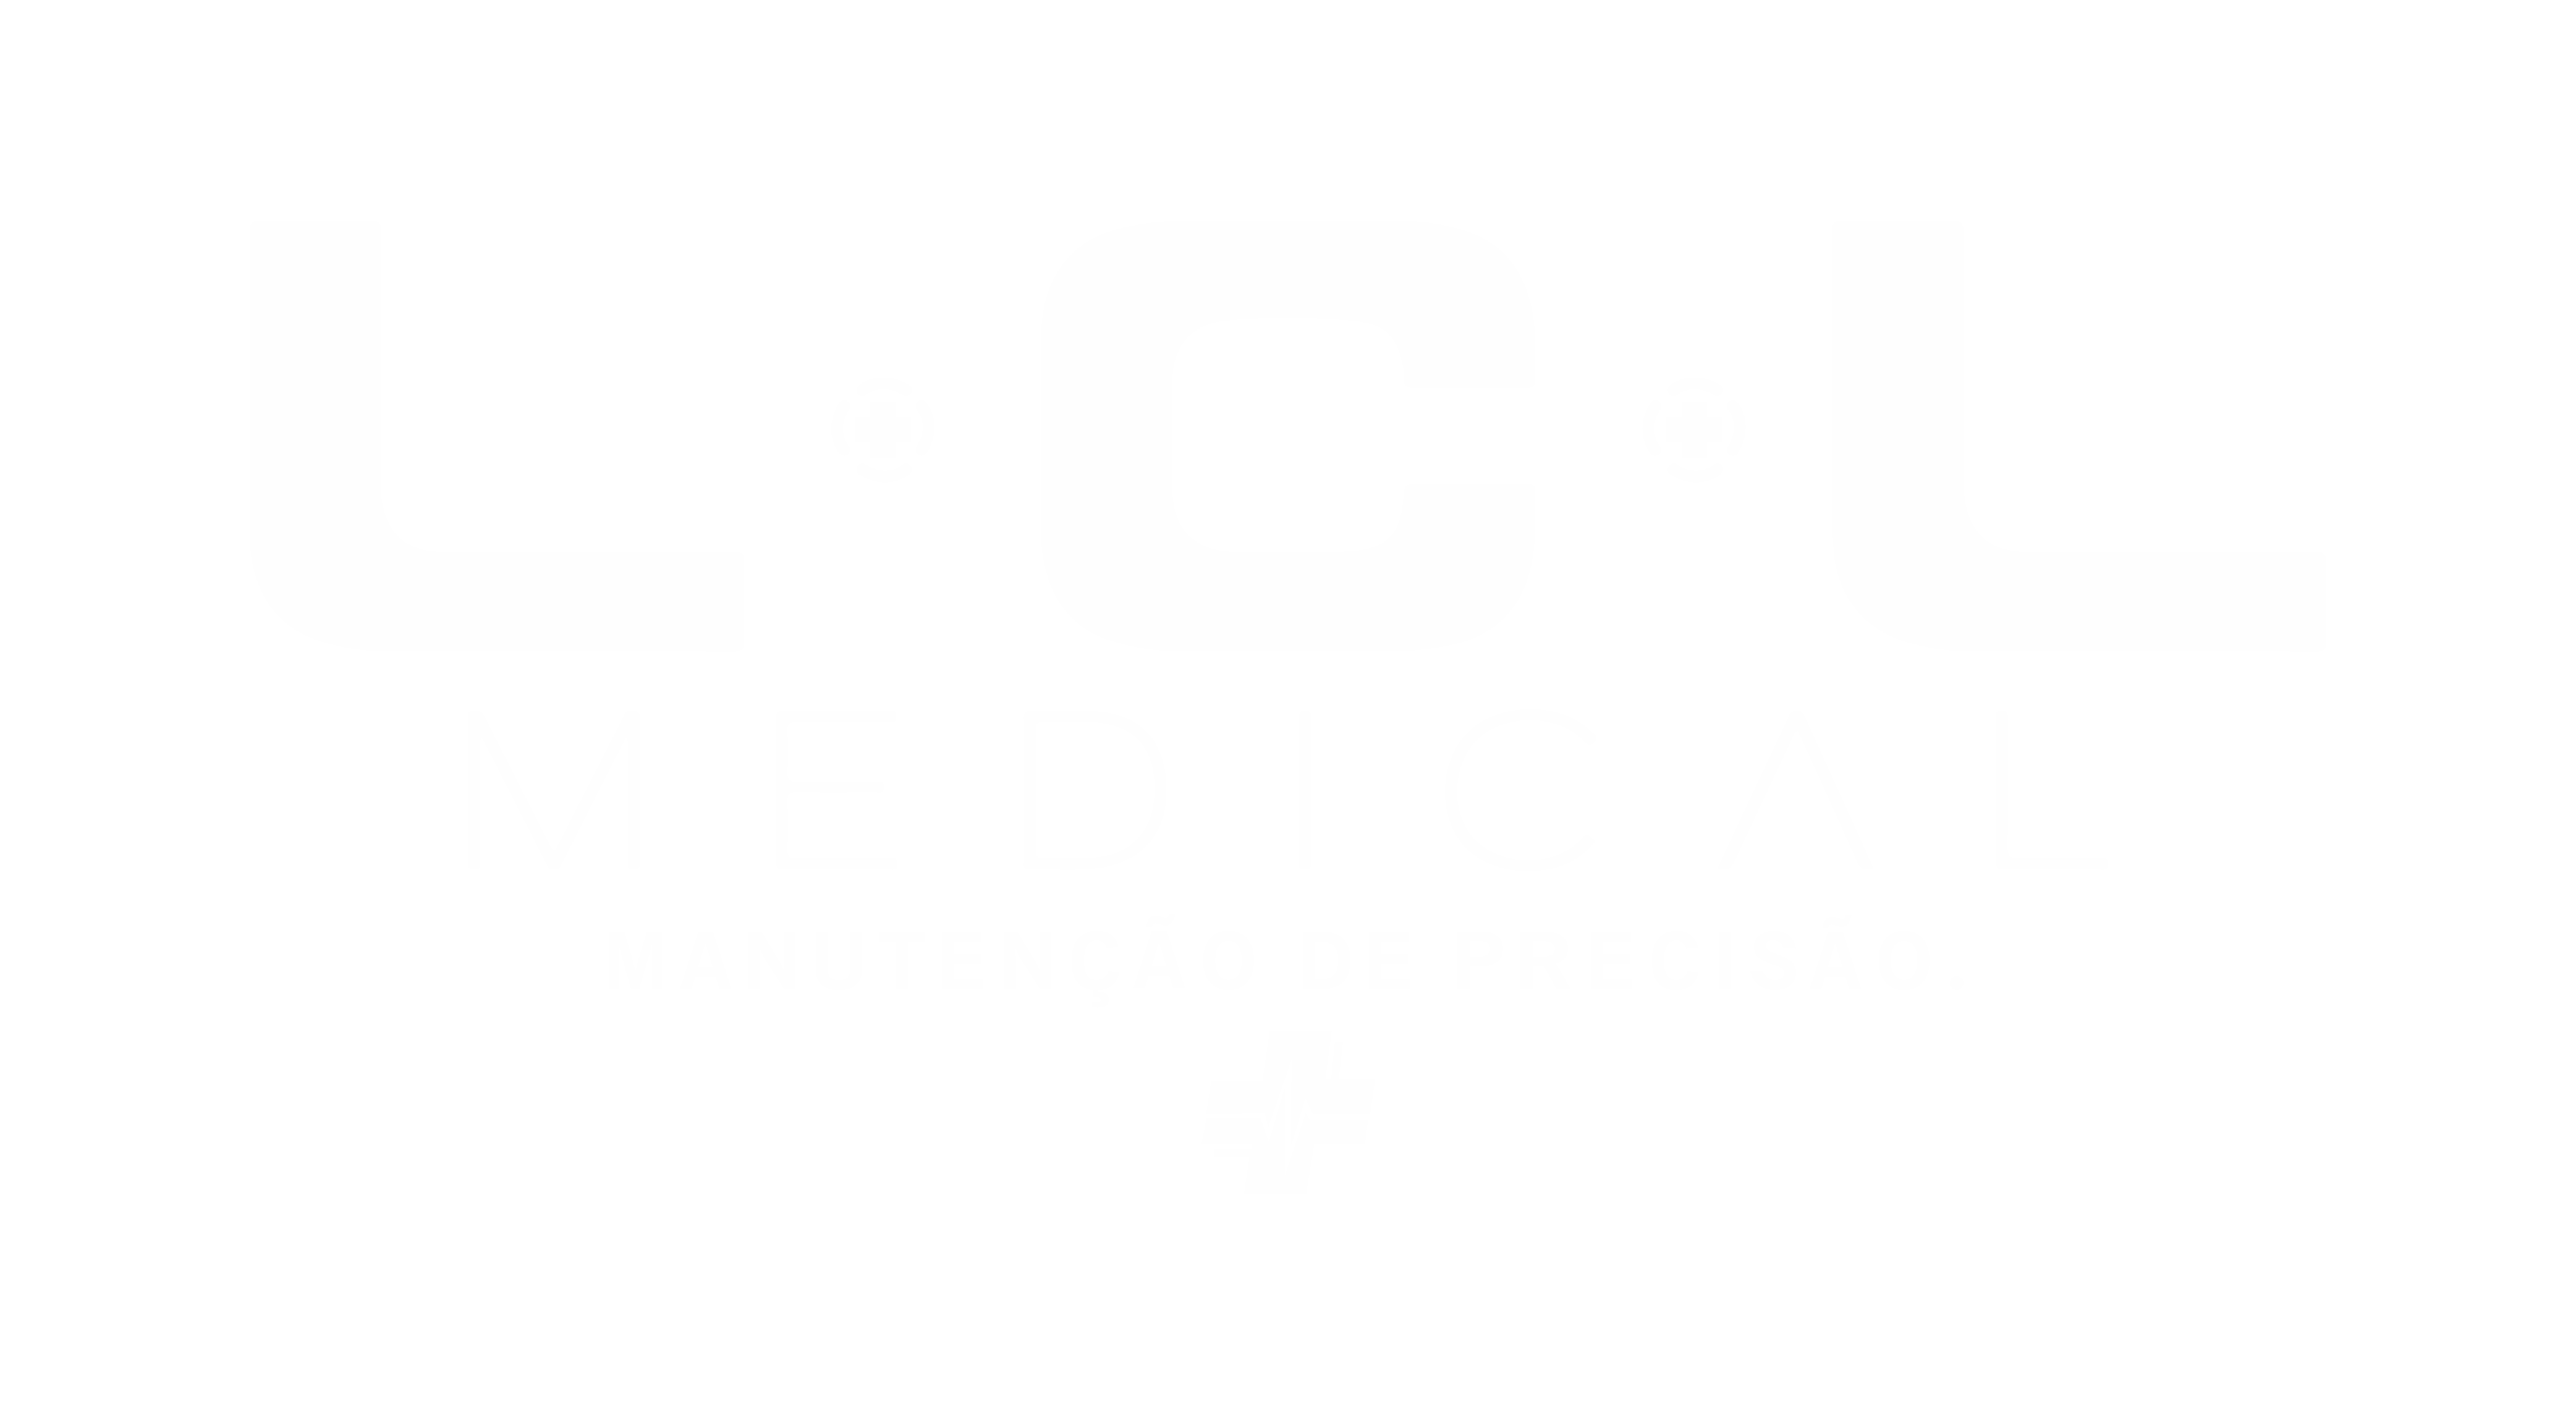 www.lclmedical.com.br